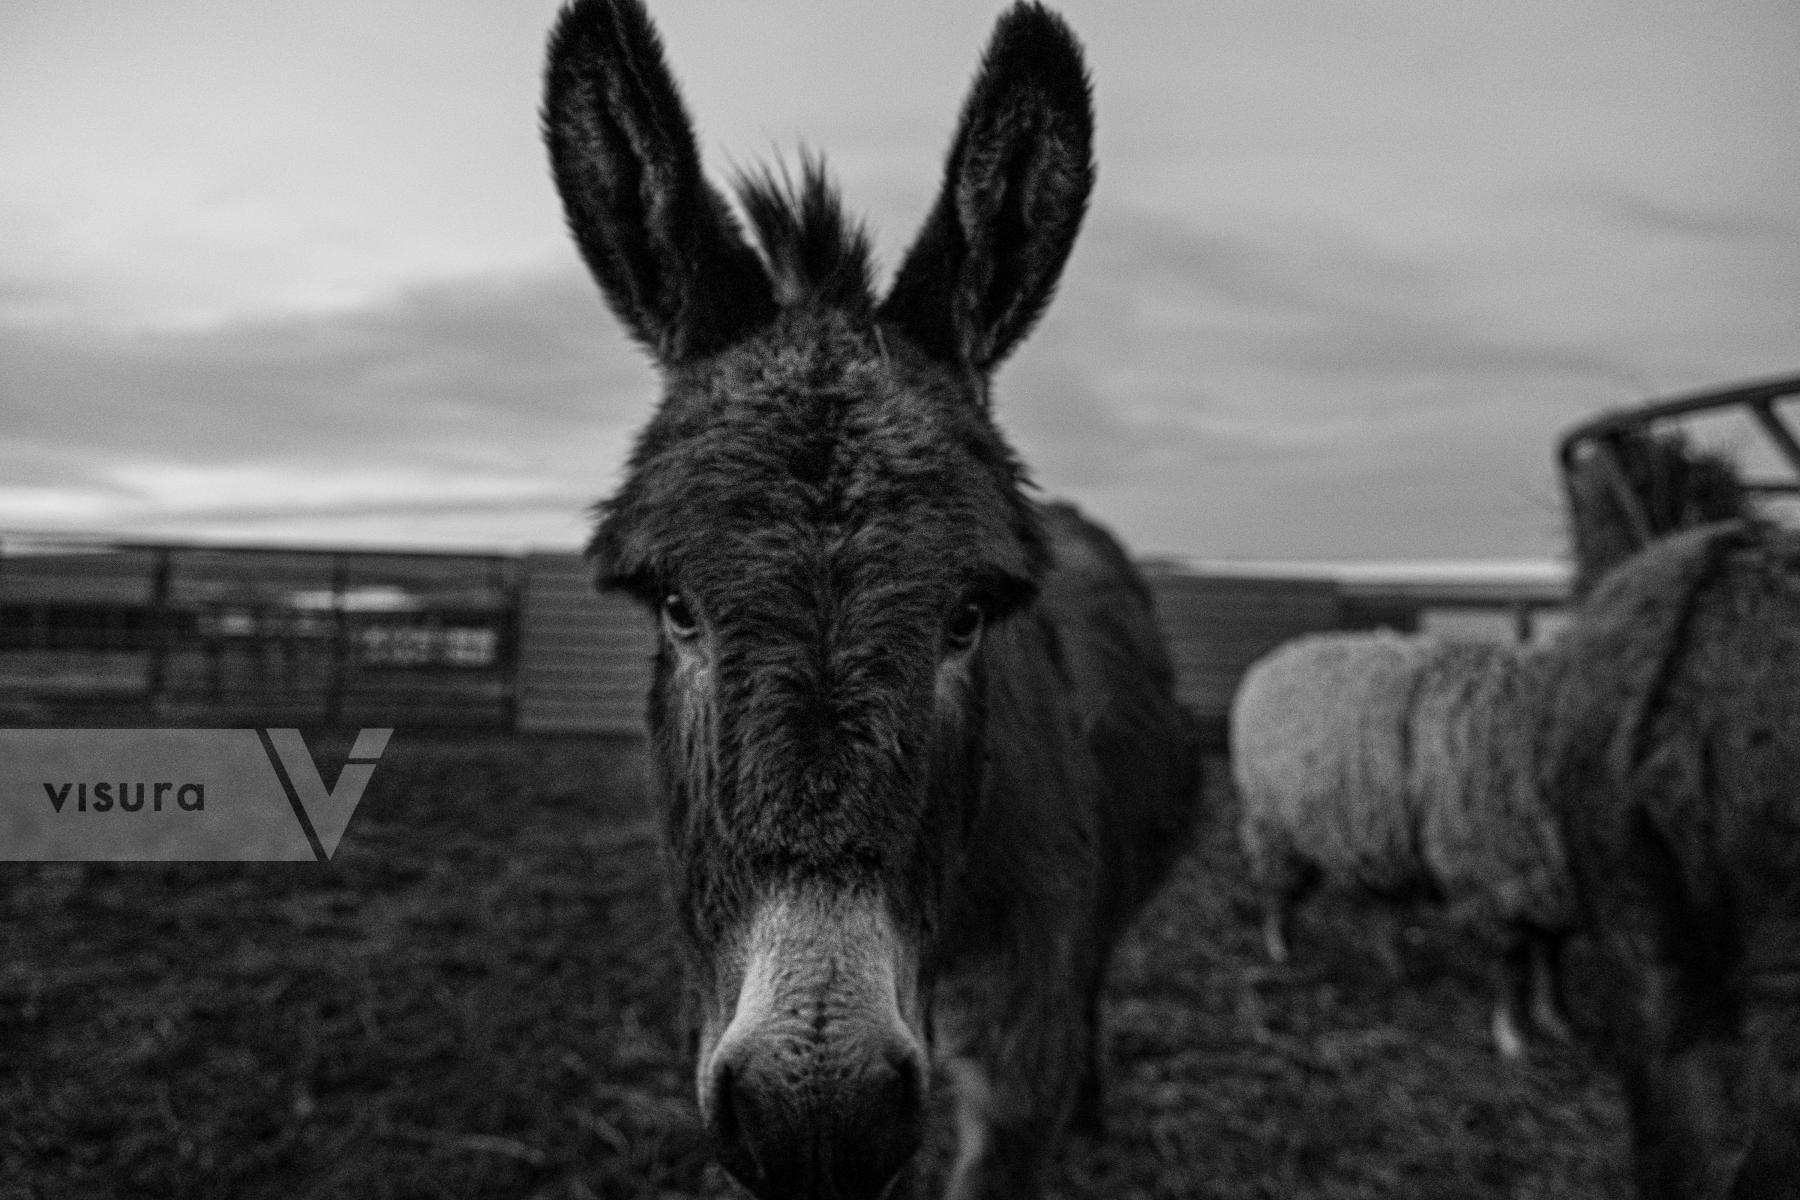 Purchase Donkey by Emily Schiffer